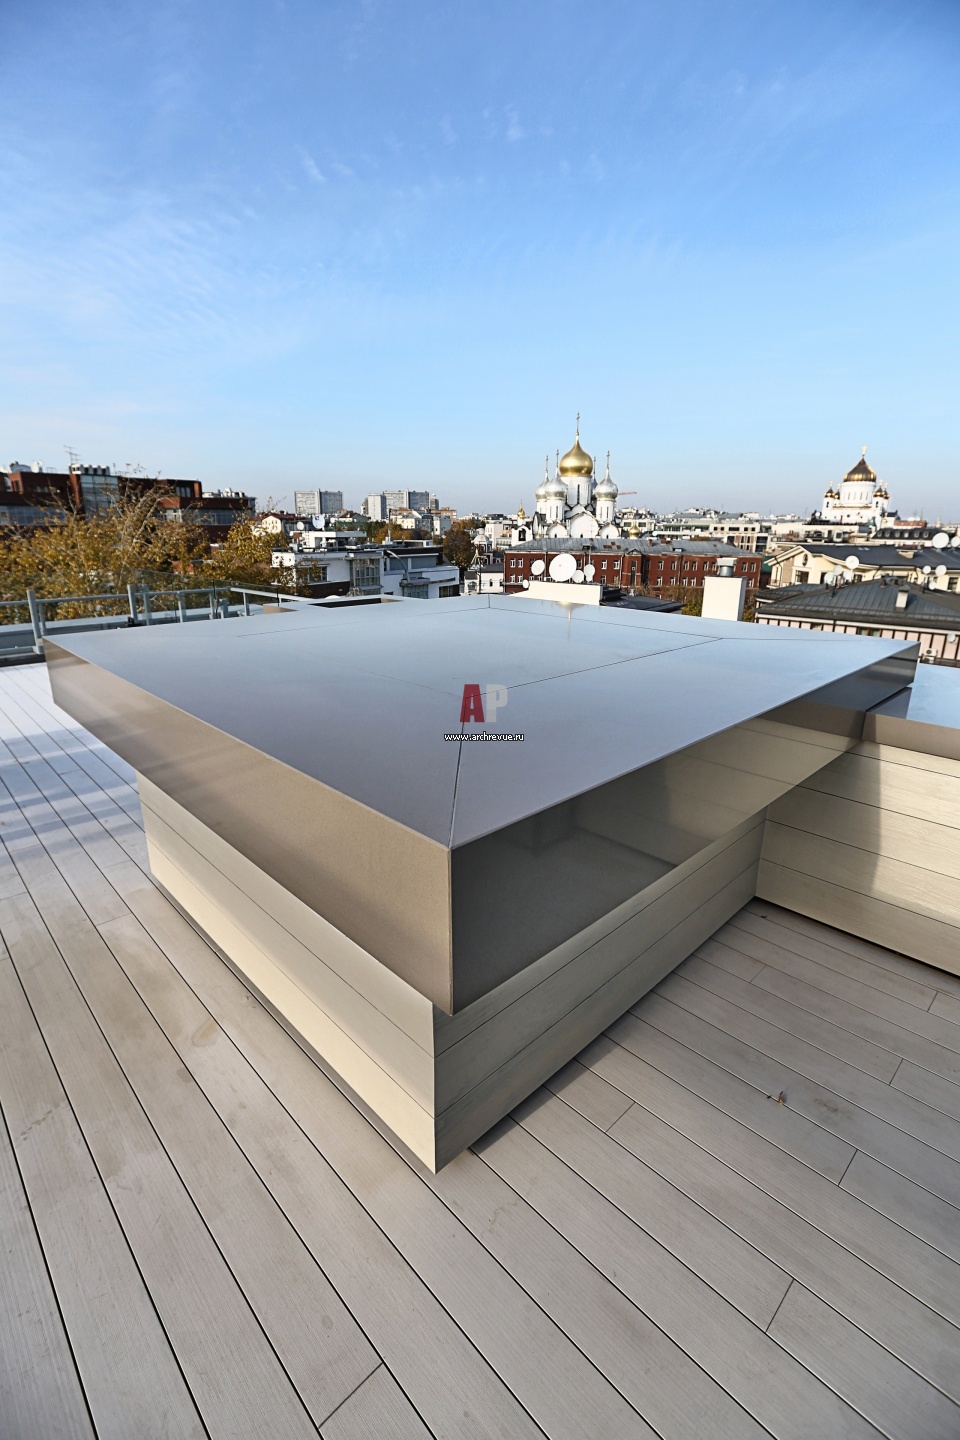 Открытая терраса на крыше дома устройство, дизайн террасы на крыше, проект  открытой площадки для отдыха на крыше, фото террасы на крыше